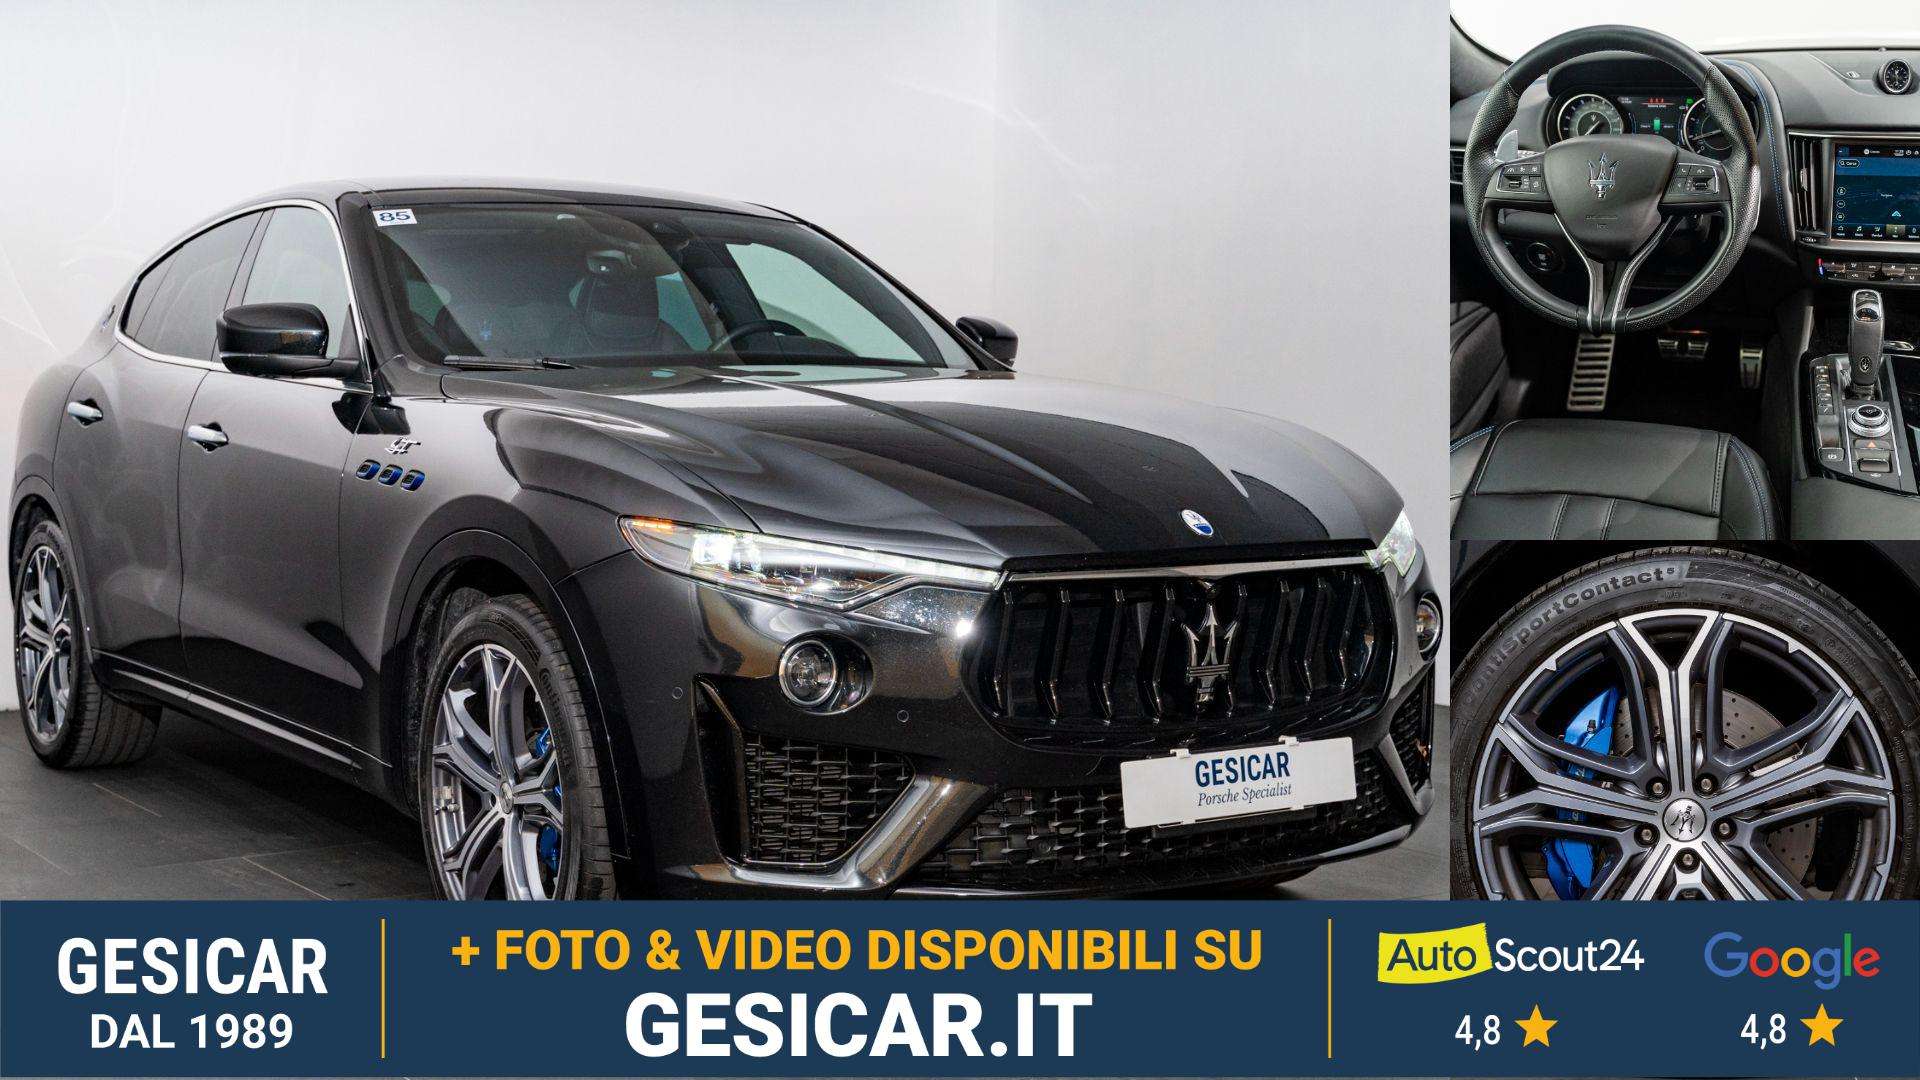 Maserati Levante Off-Road/Pick-up in Black used in Livorno - Li for € 63,400.-